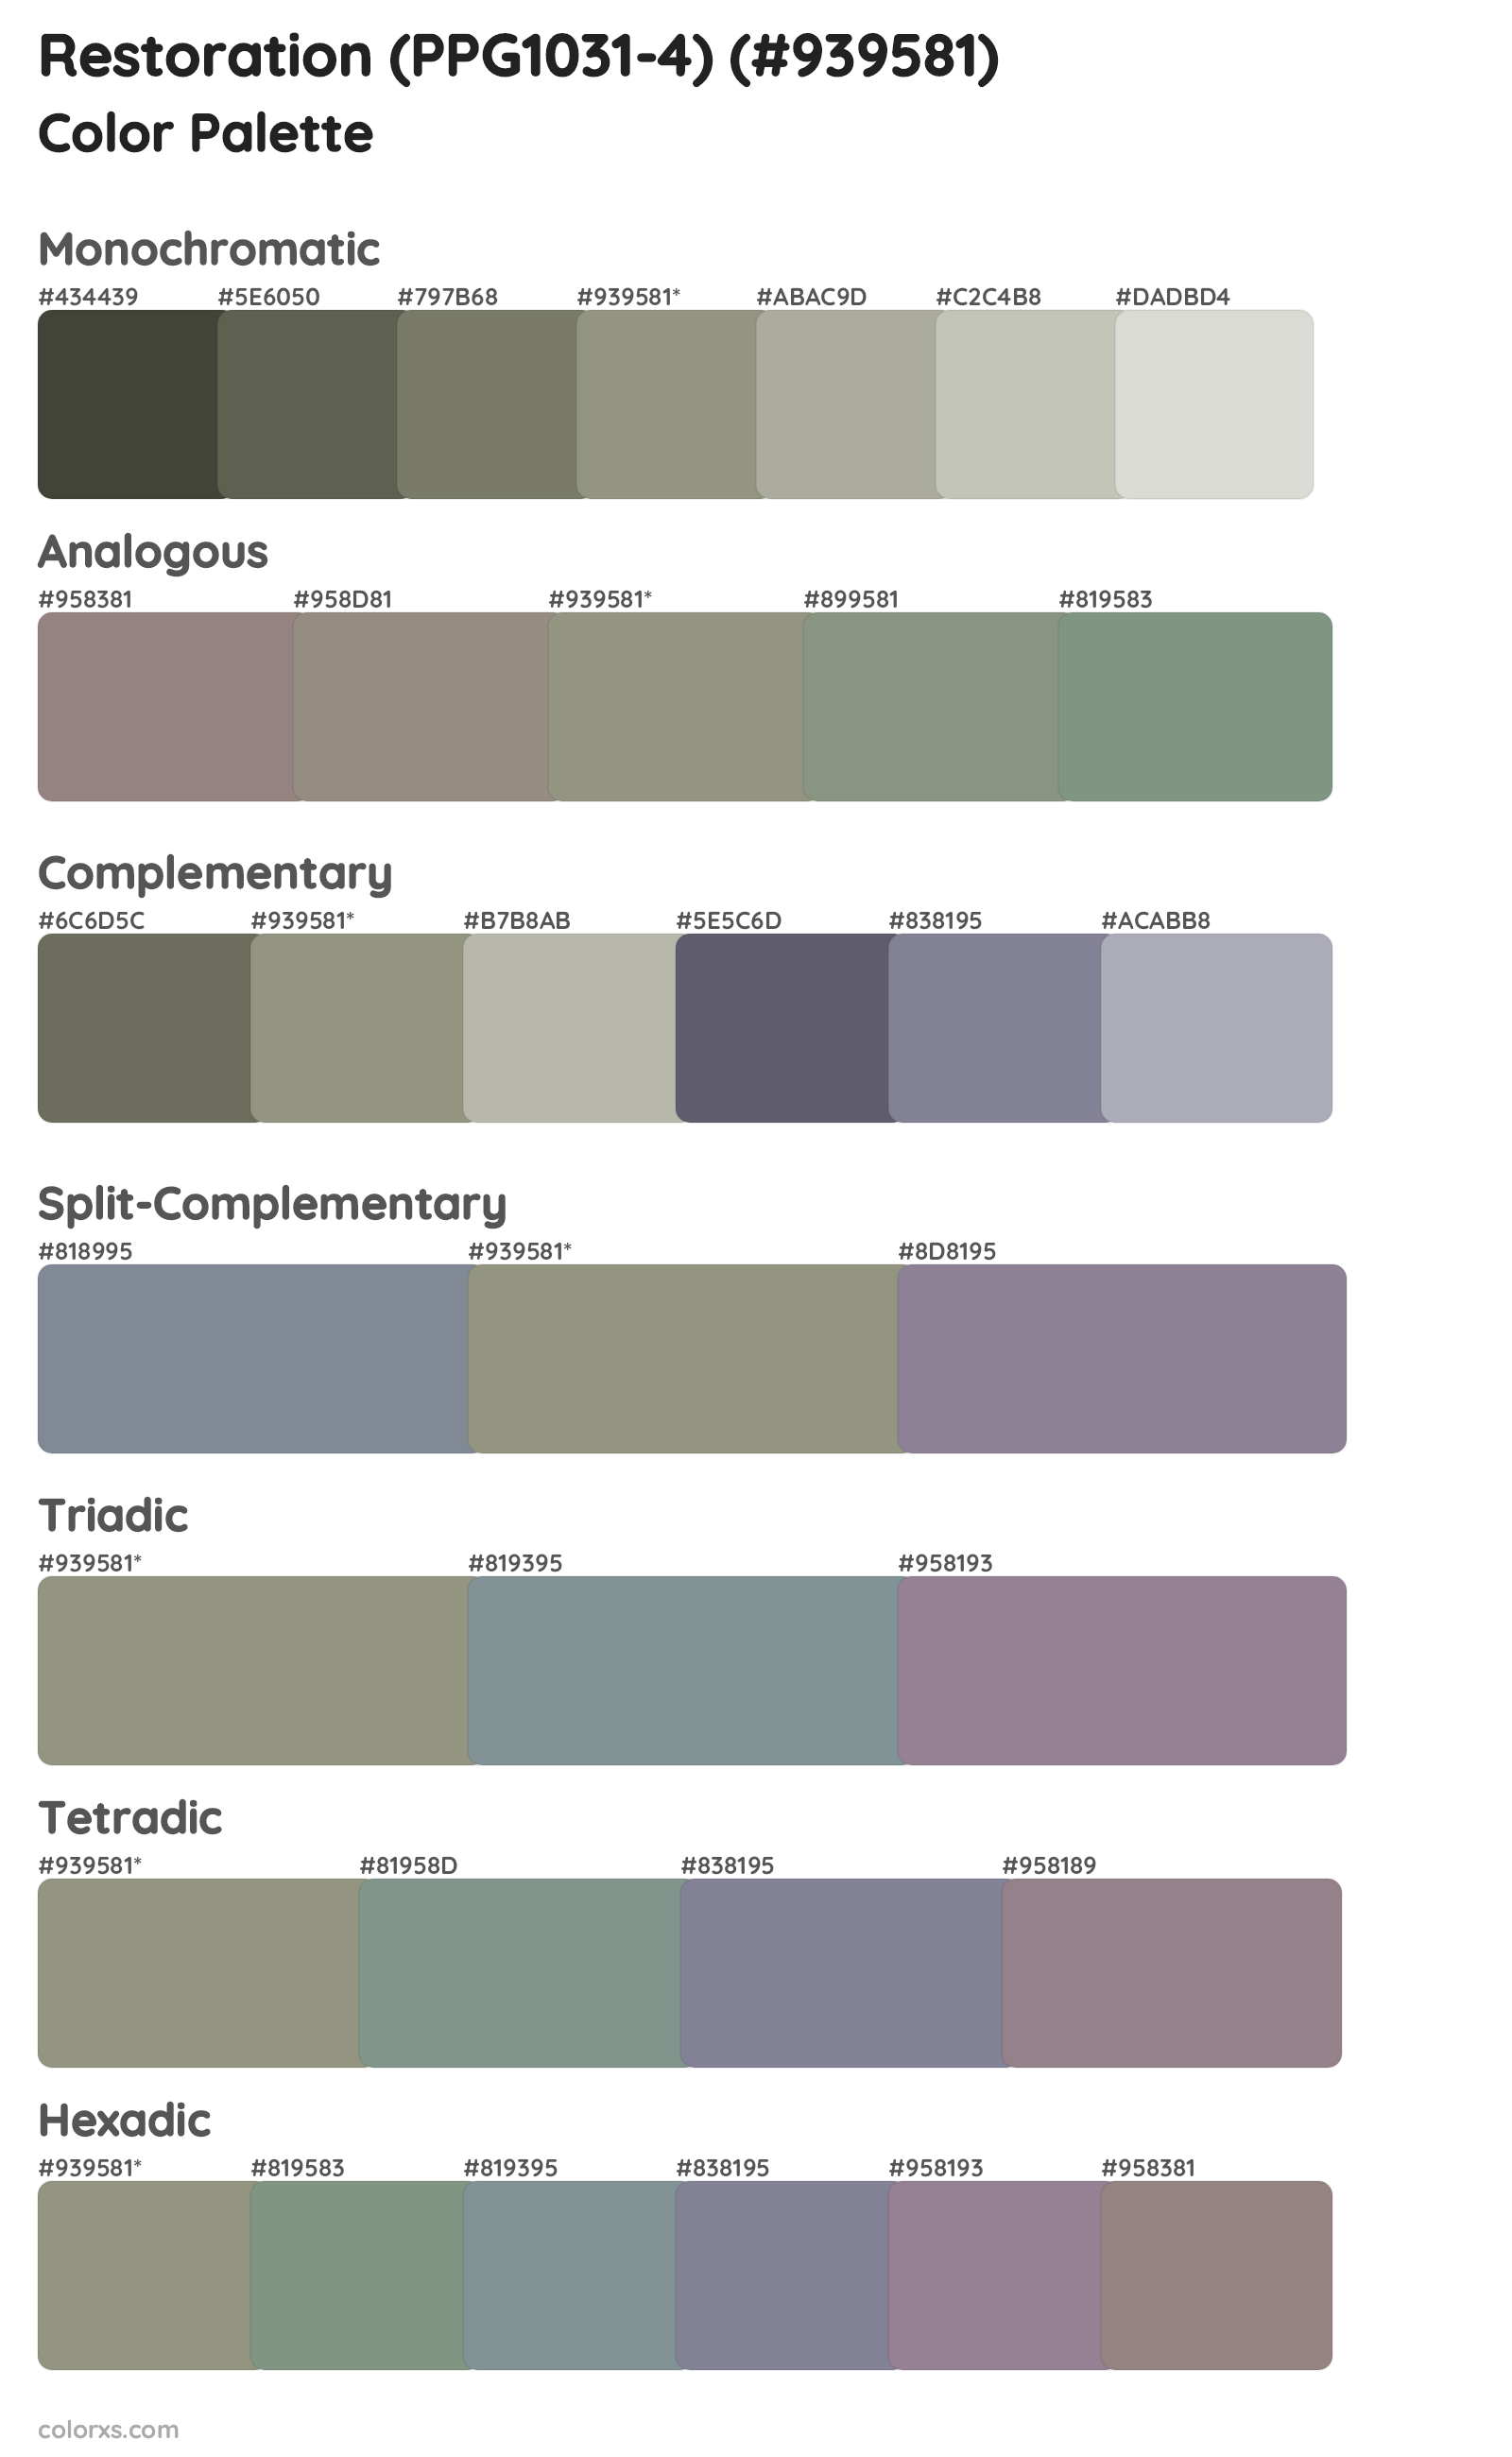 Restoration (PPG1031-4) Color Scheme Palettes